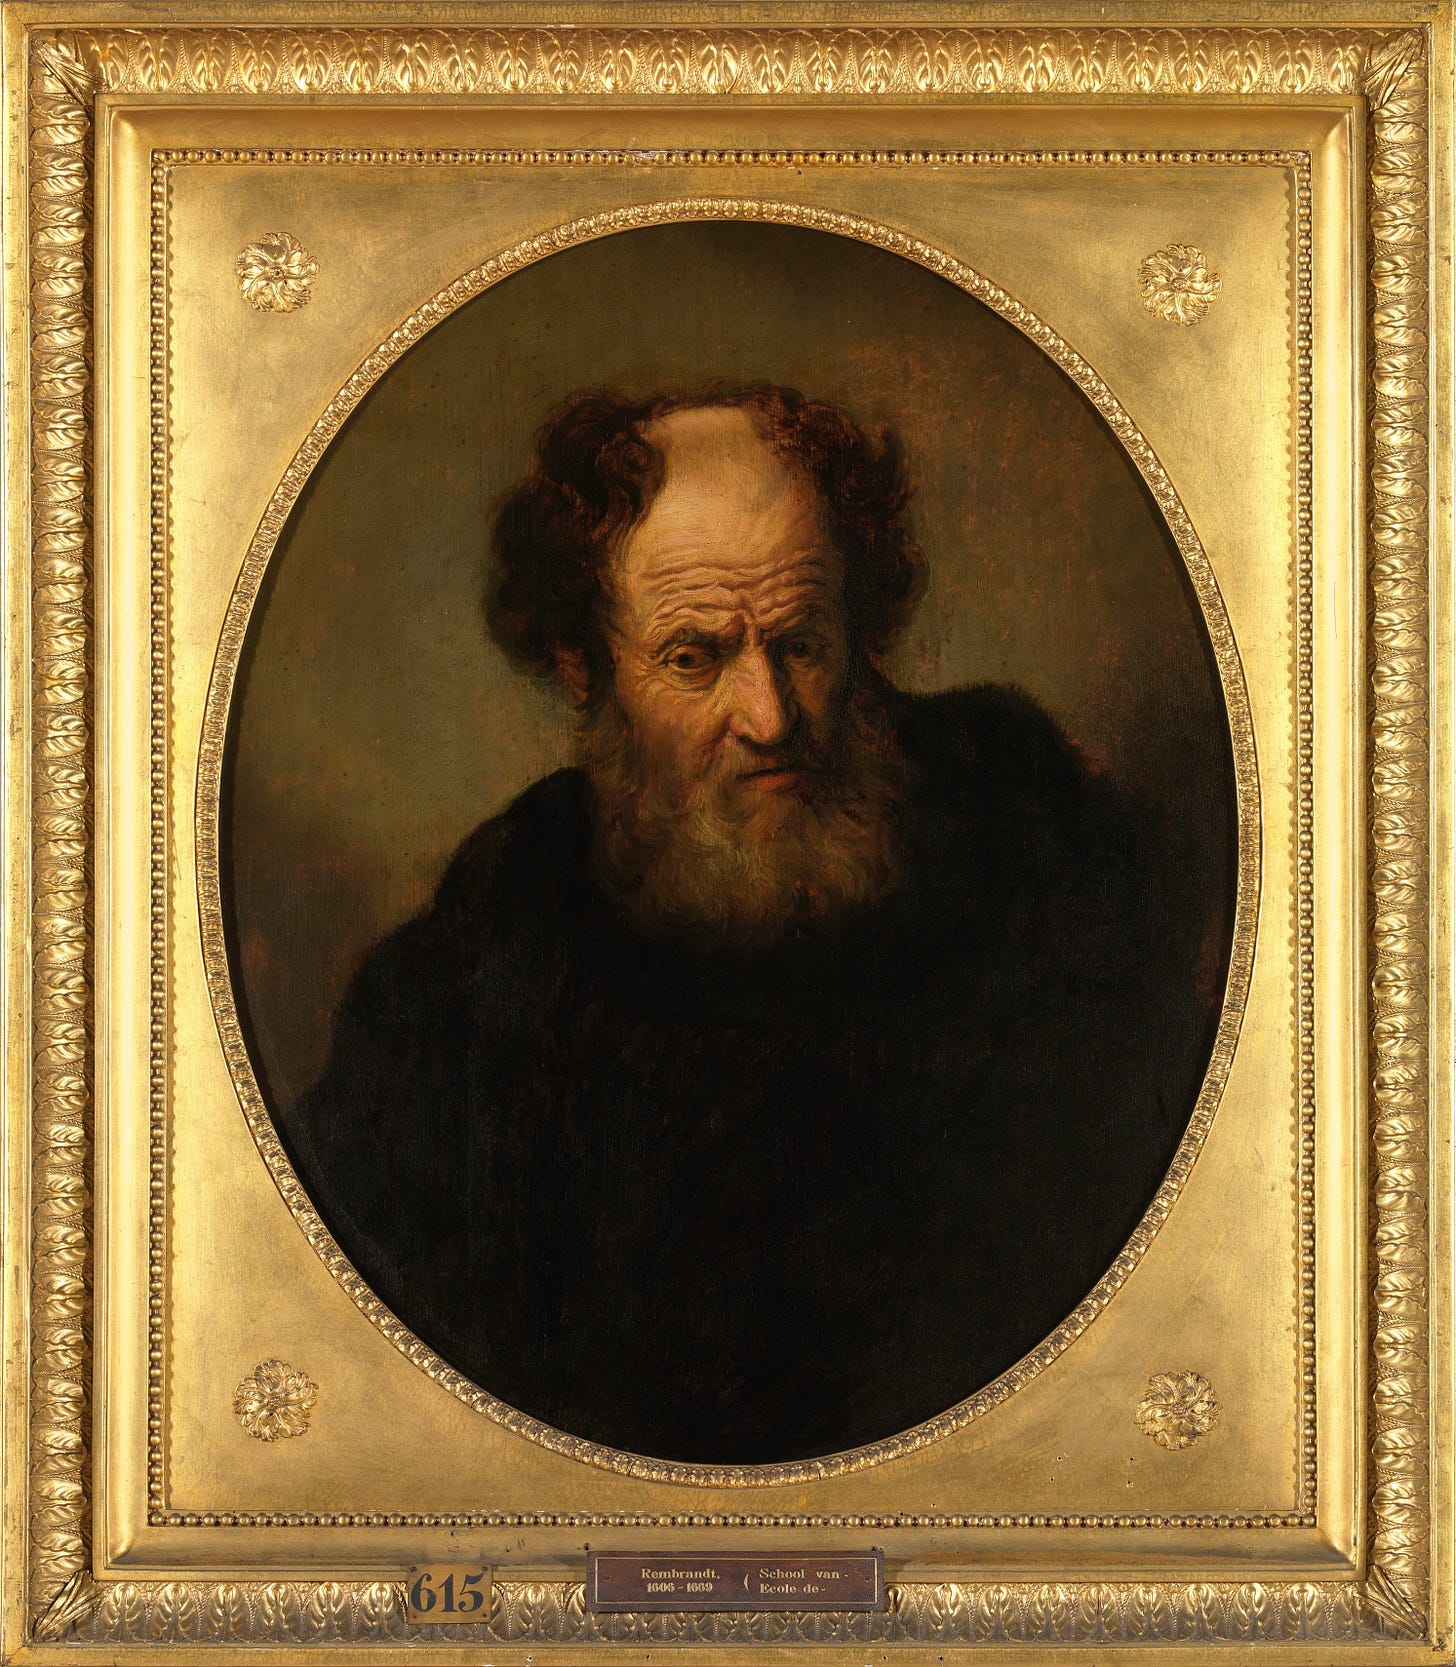 An Old Man by Rembrandt van Rijn